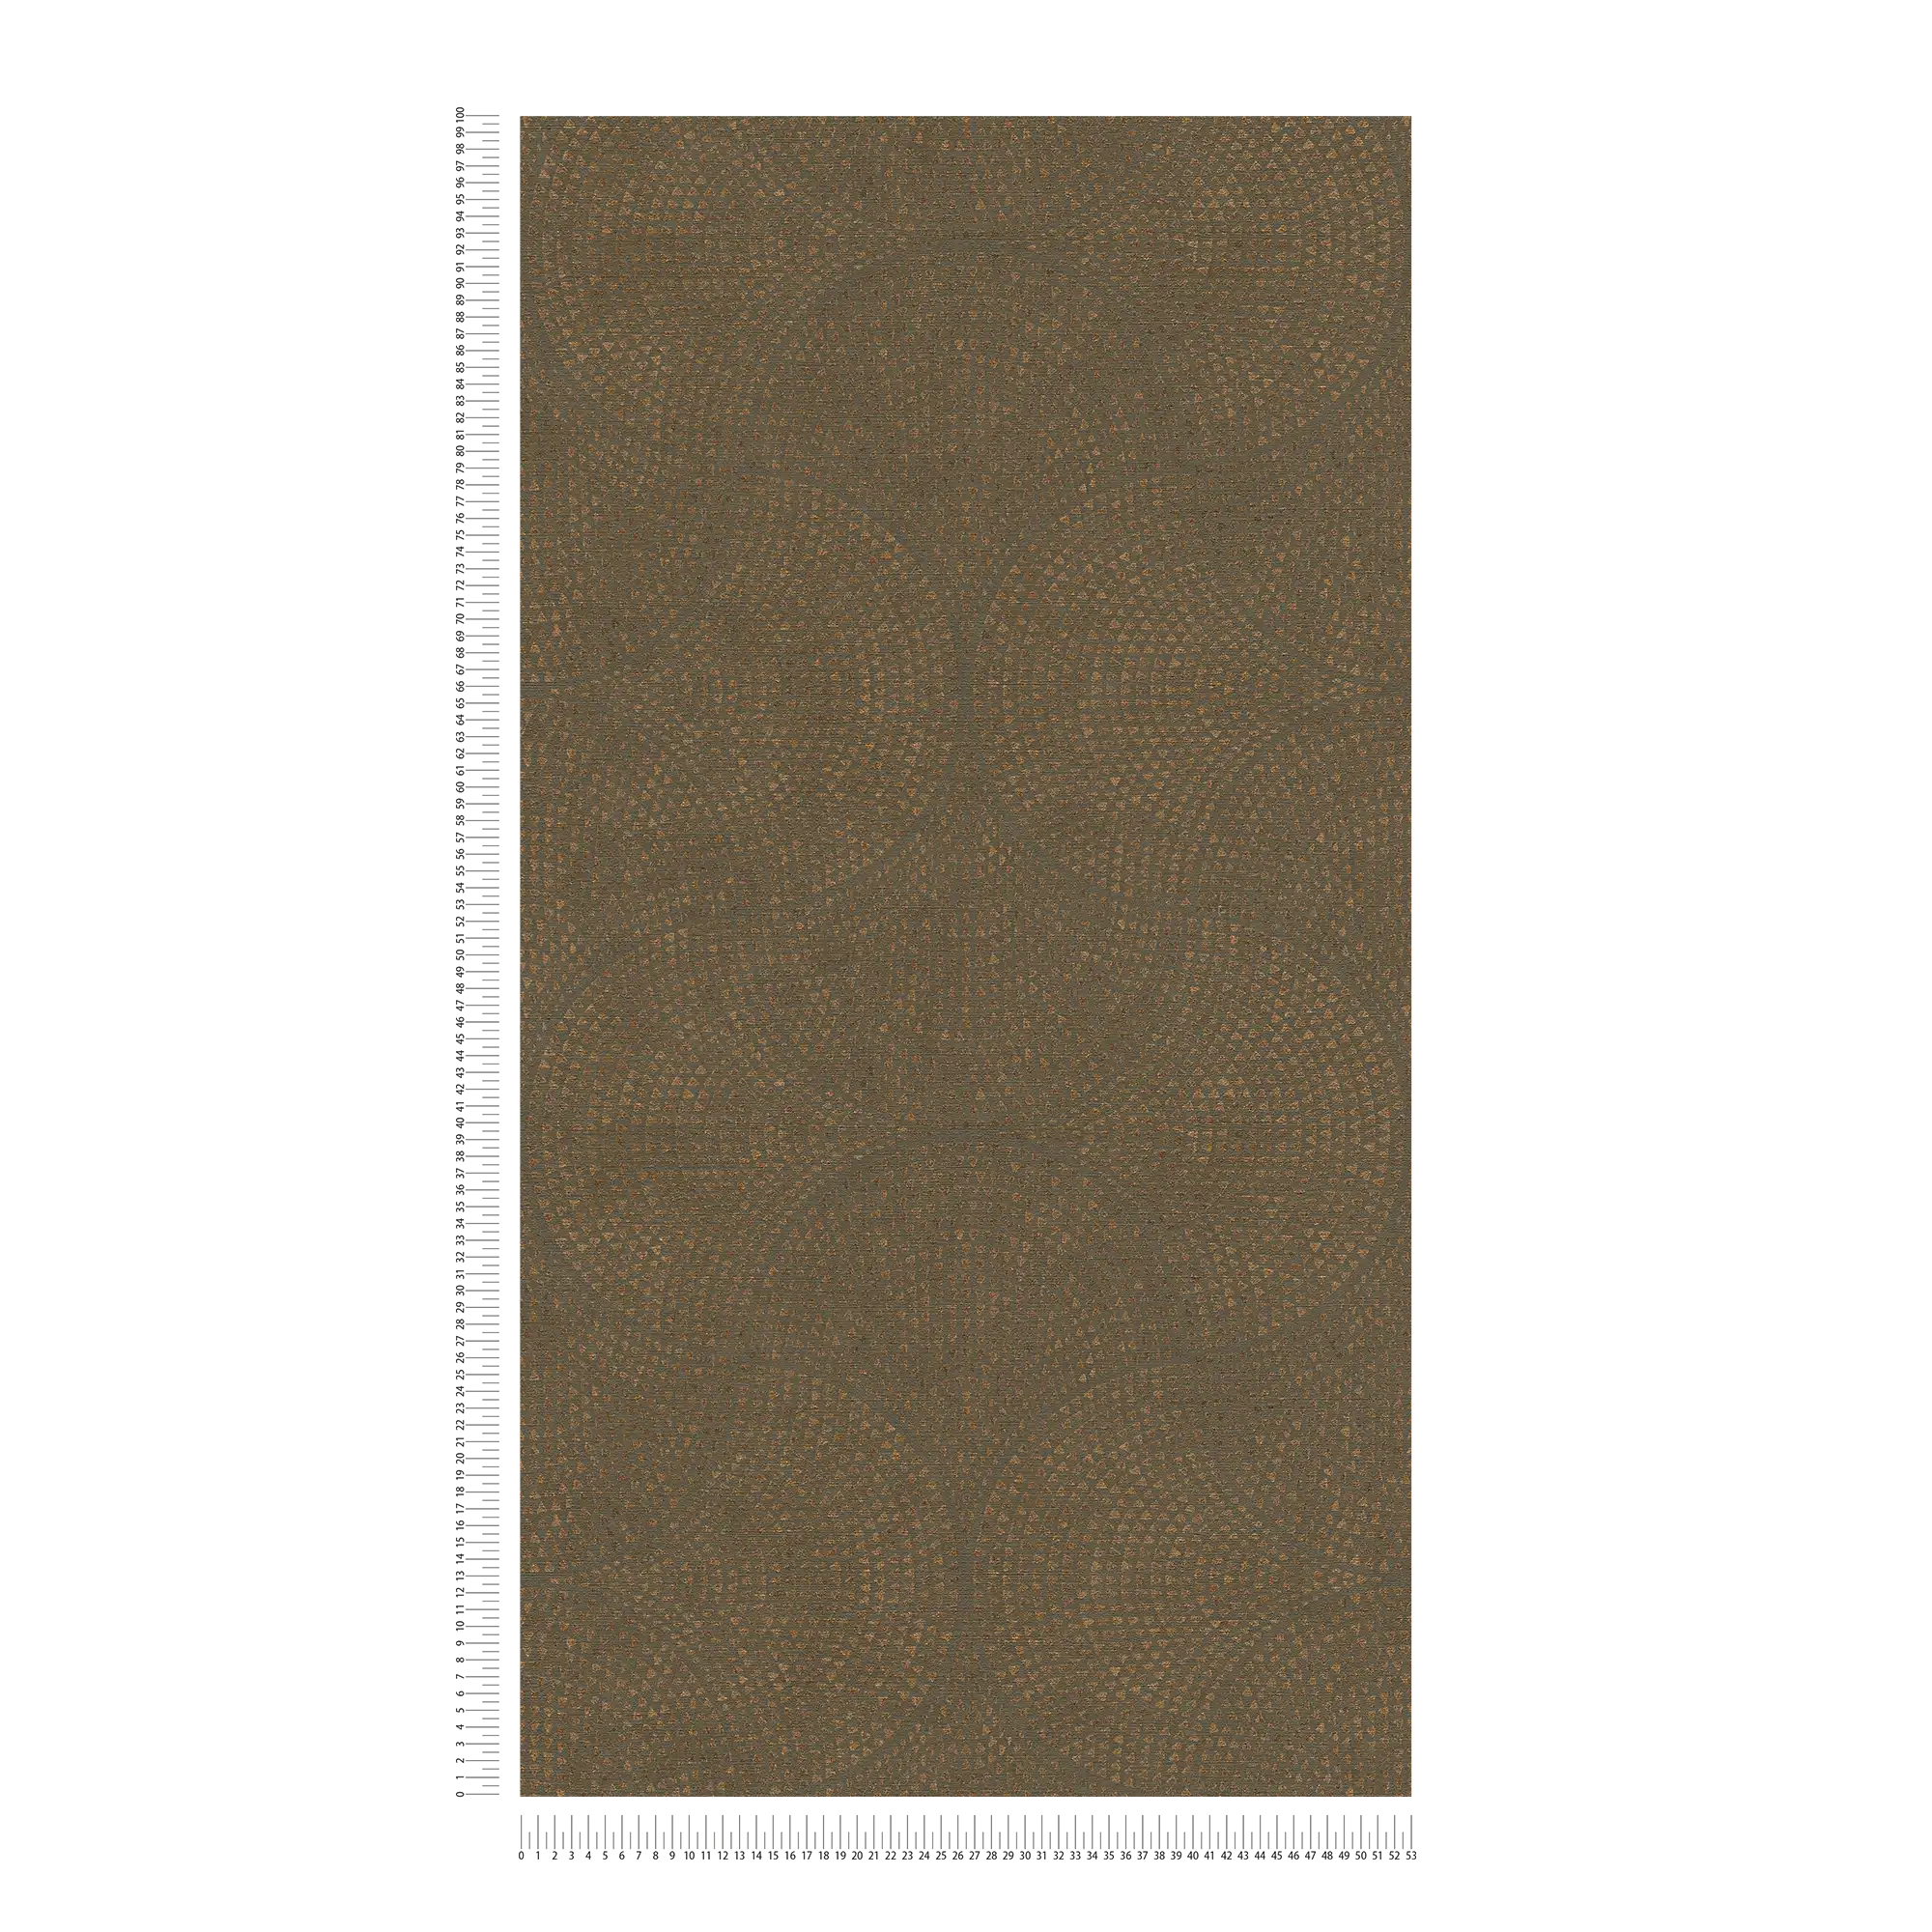             Bruin behangpapier met koperpatroon in mozaïekstijl - bruin, metallic
        